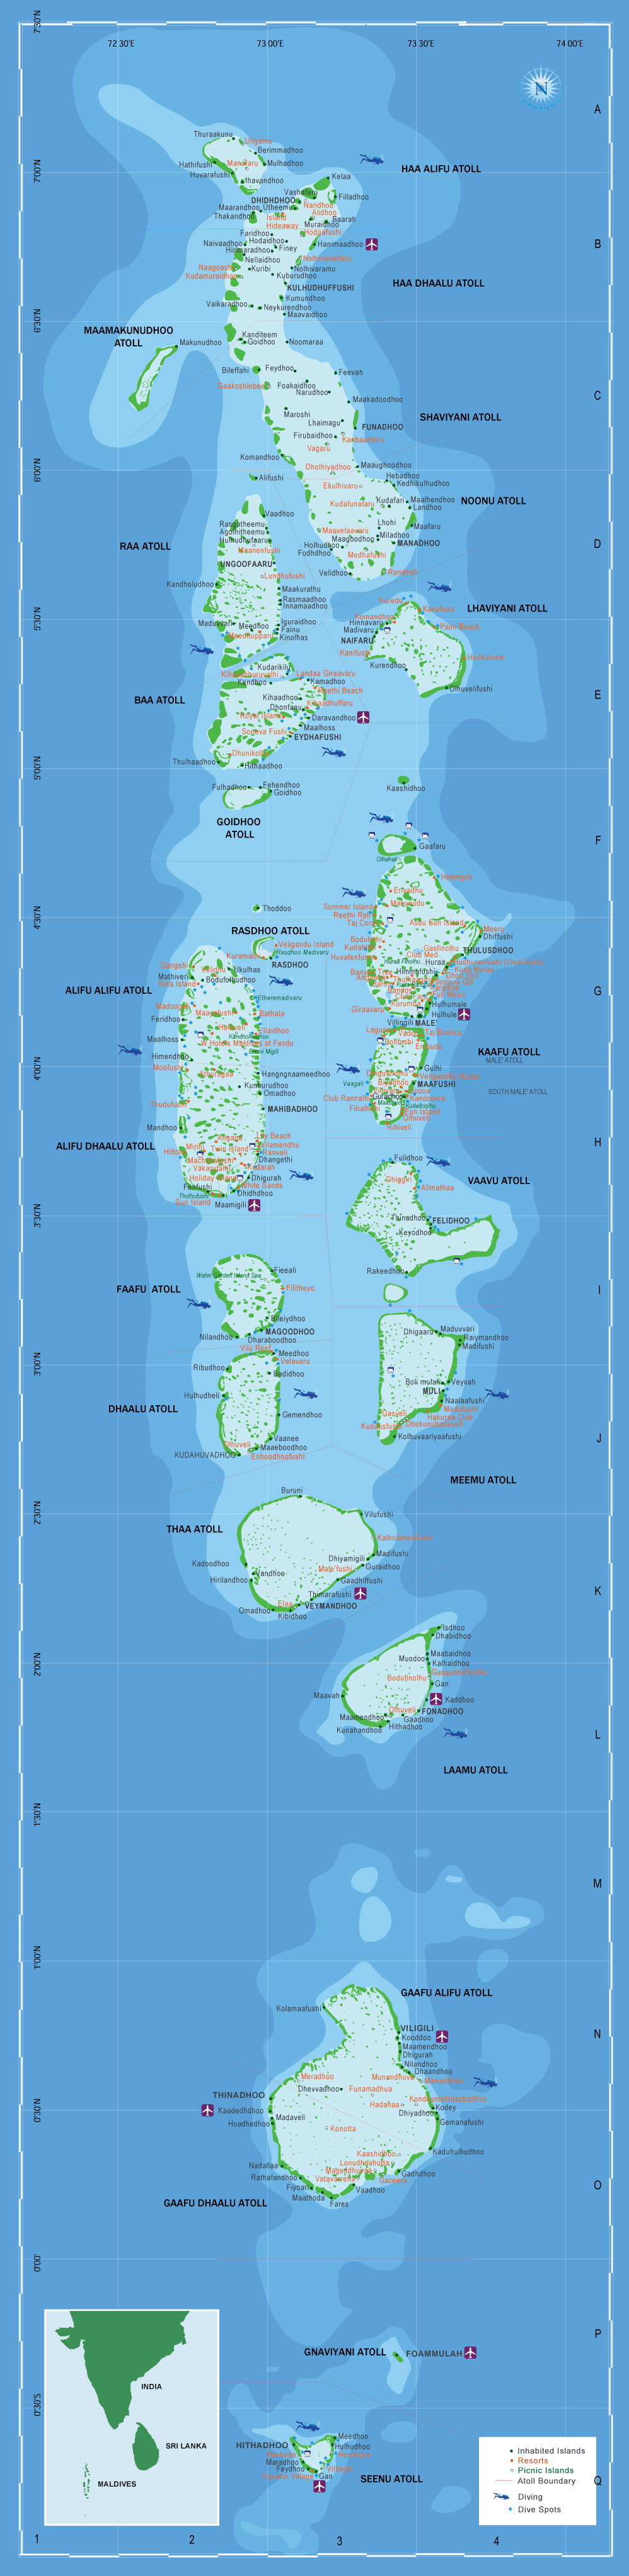 Maidives Map